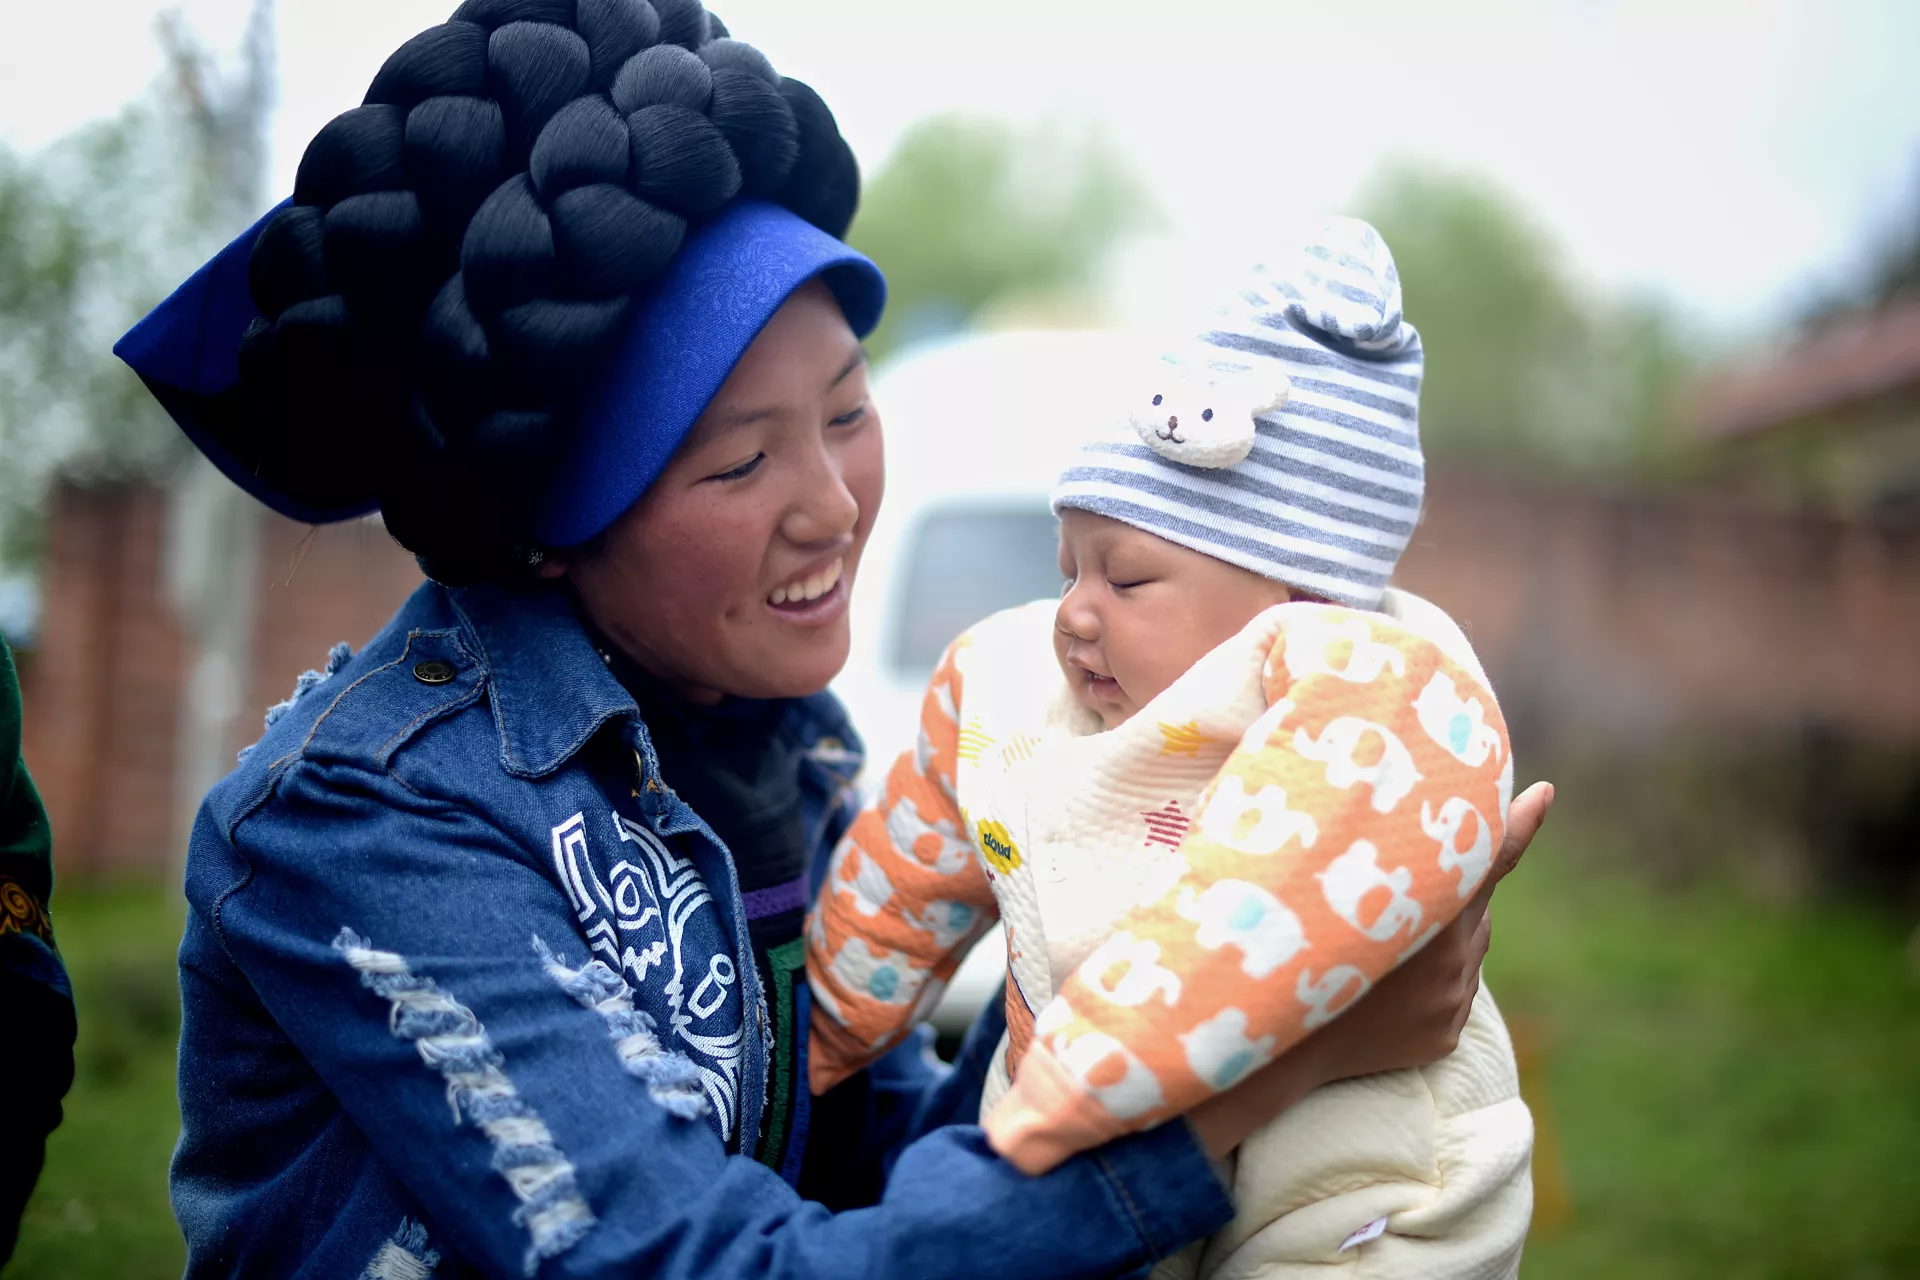 由于传统风俗、交通不便或者经济困难等原因，中国农村少数民族地区的妇女常常无法进行住院分娩。